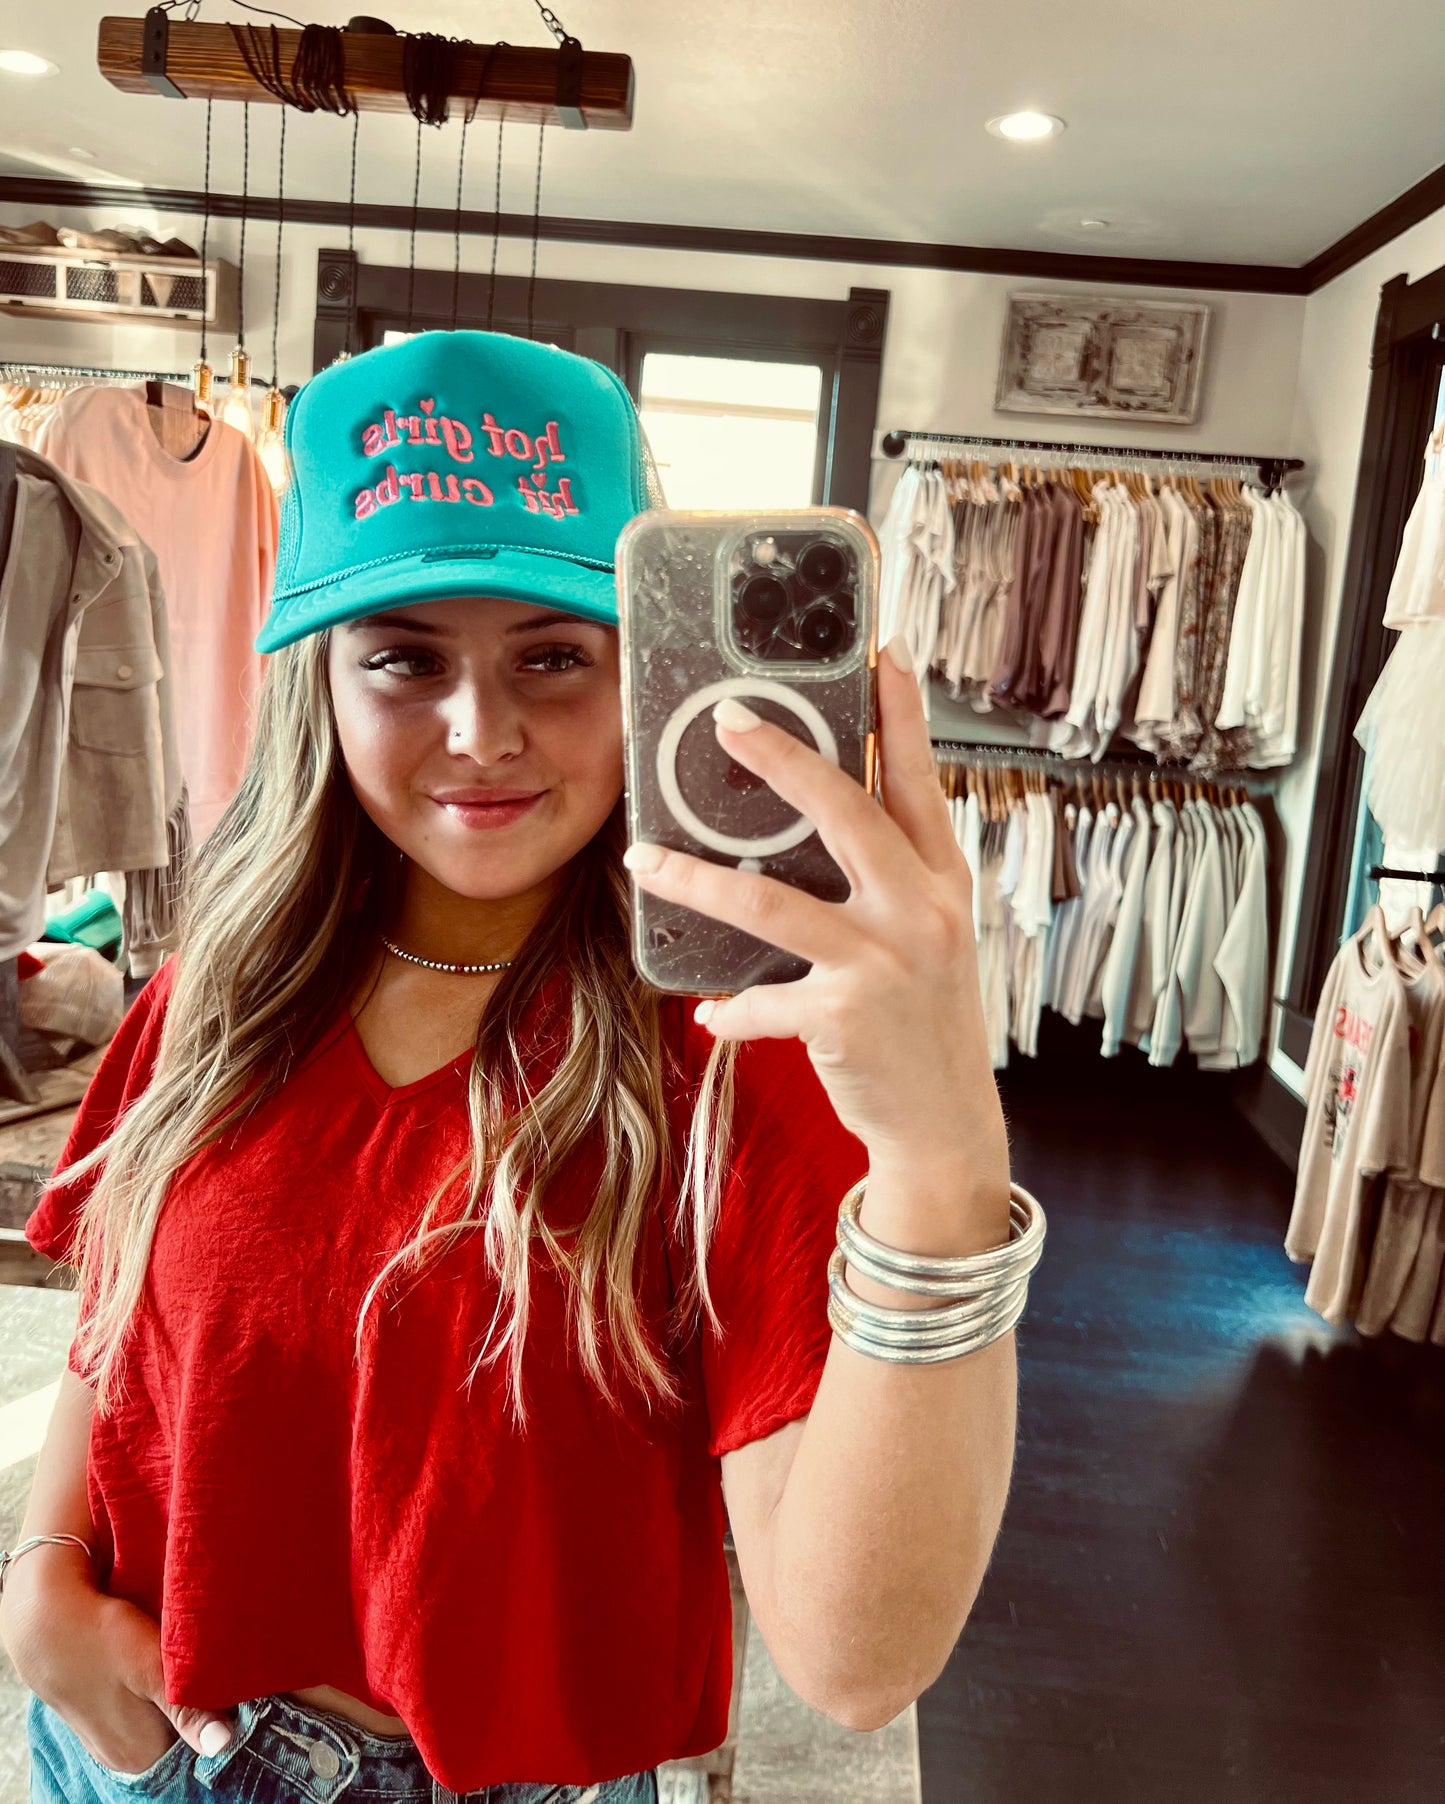 Hot Girls Hit Curbs Trucker Hat